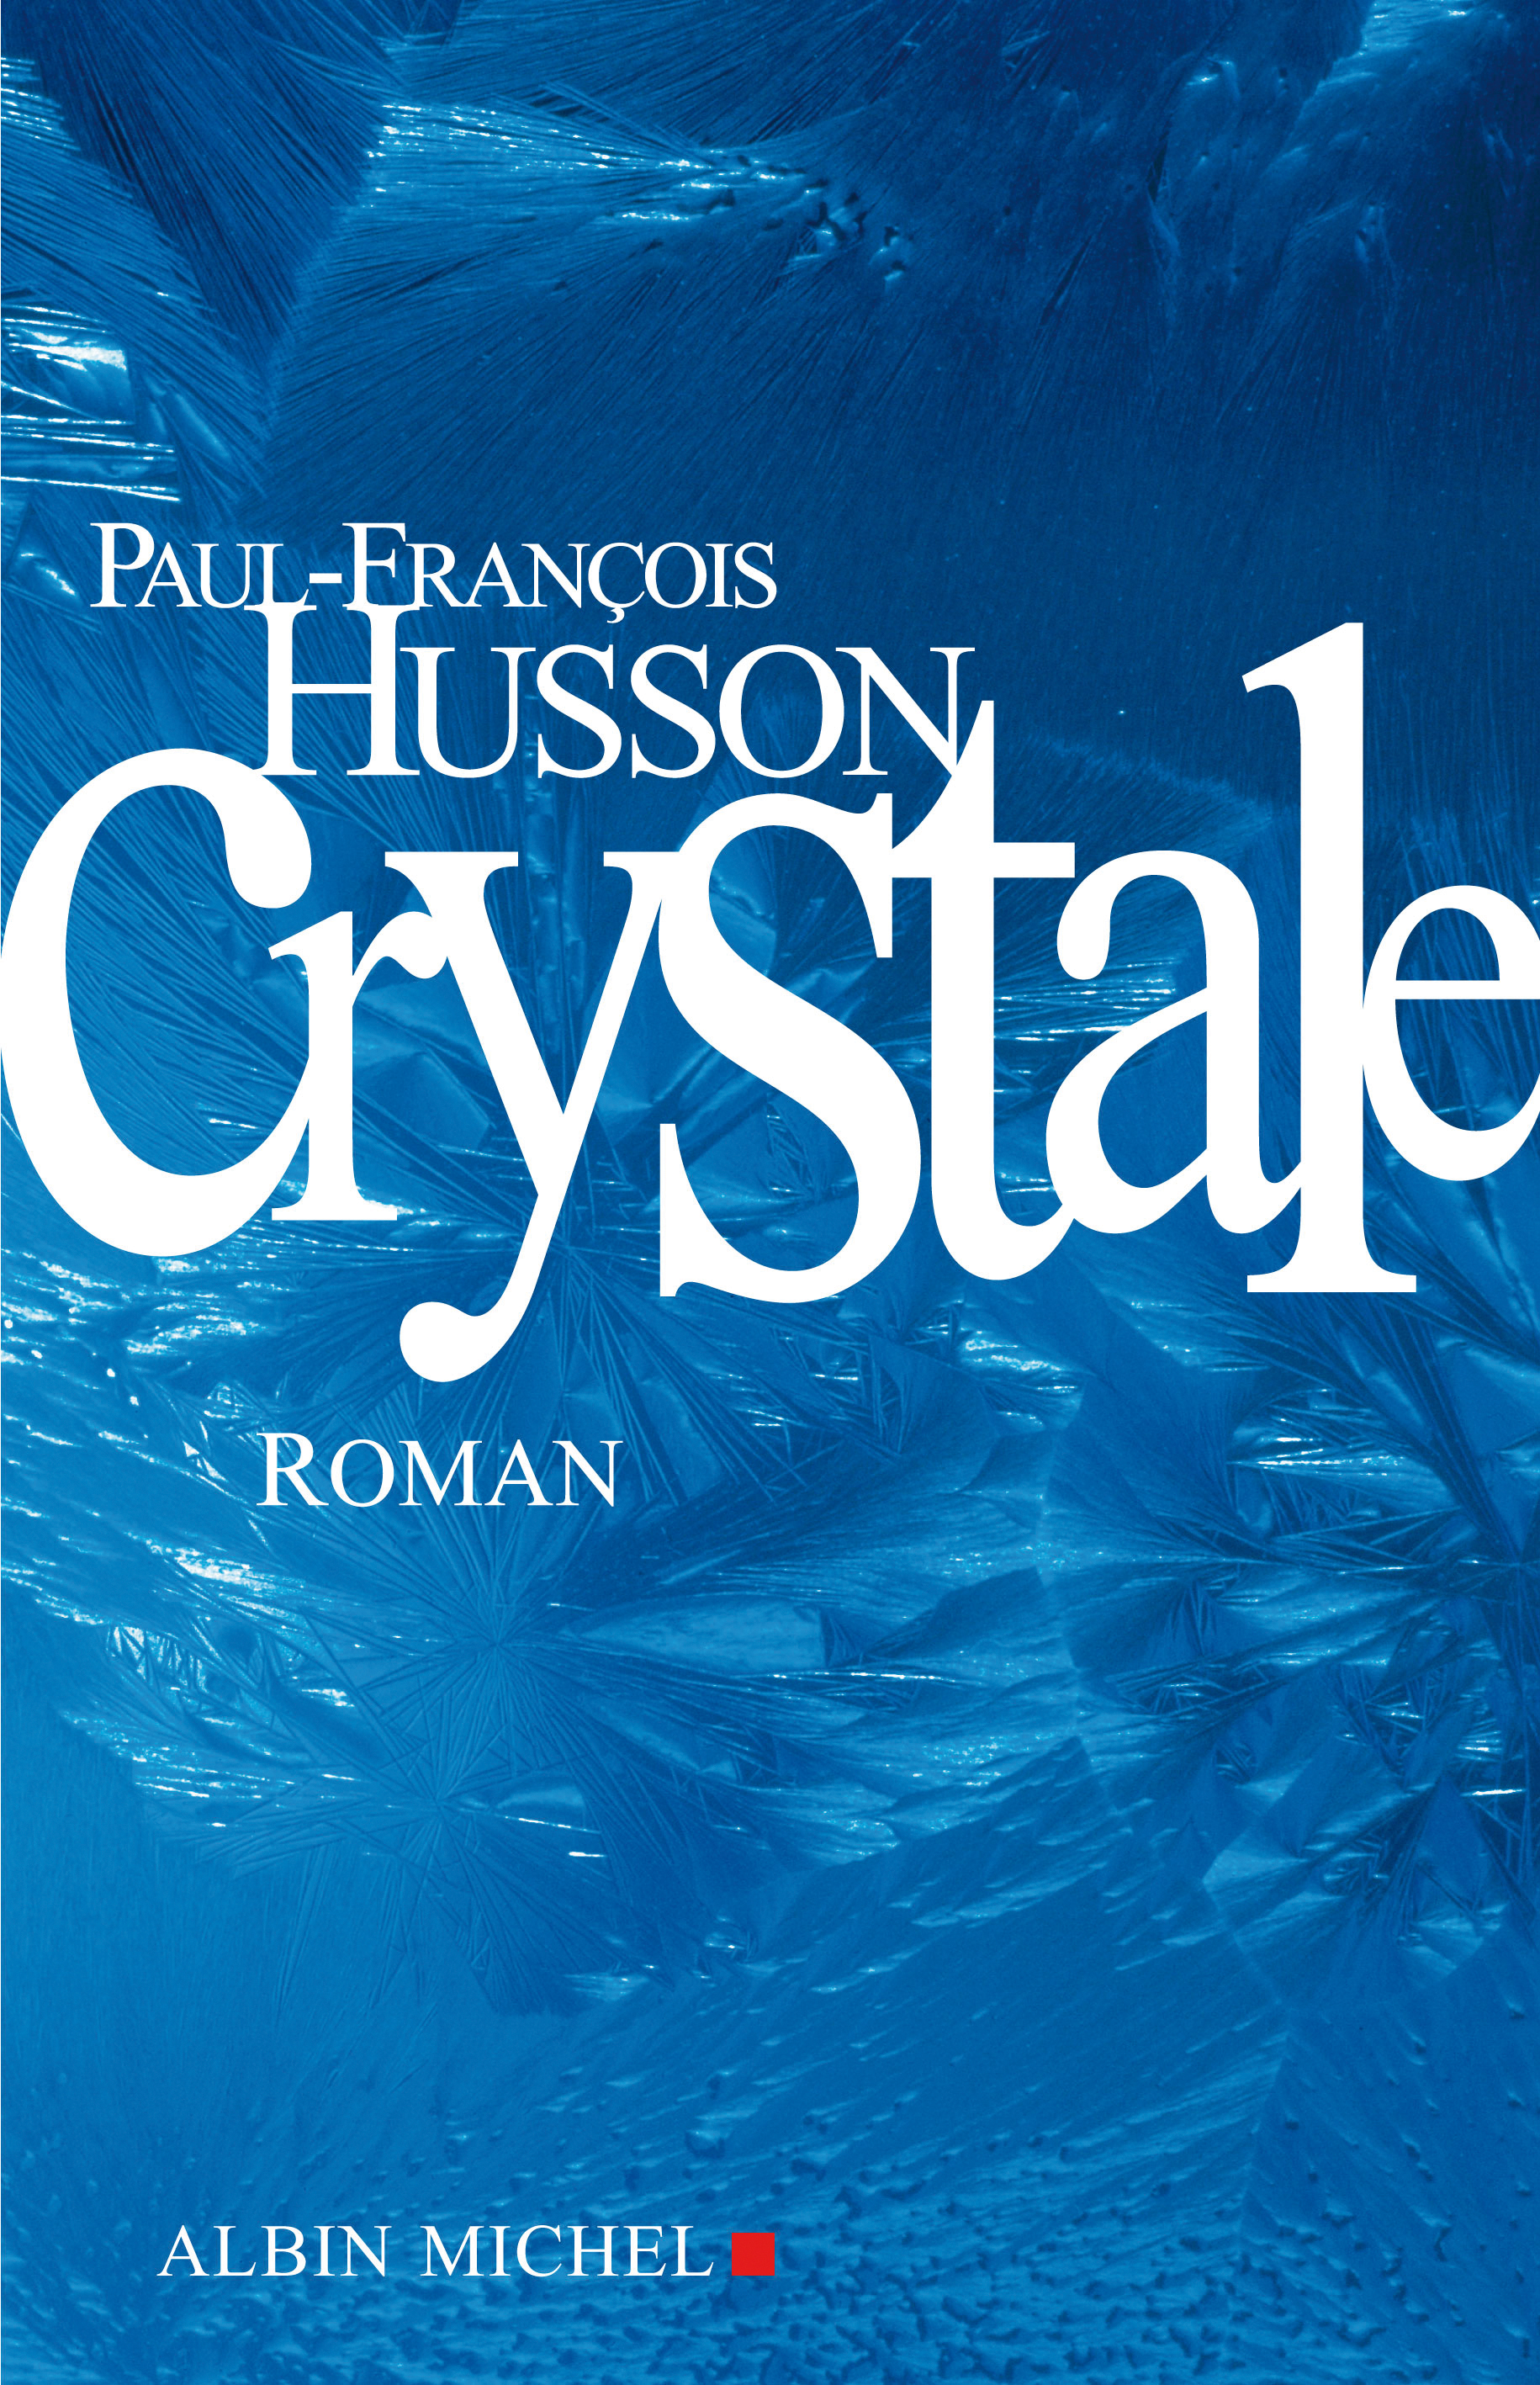 Couverture du livre Crystale